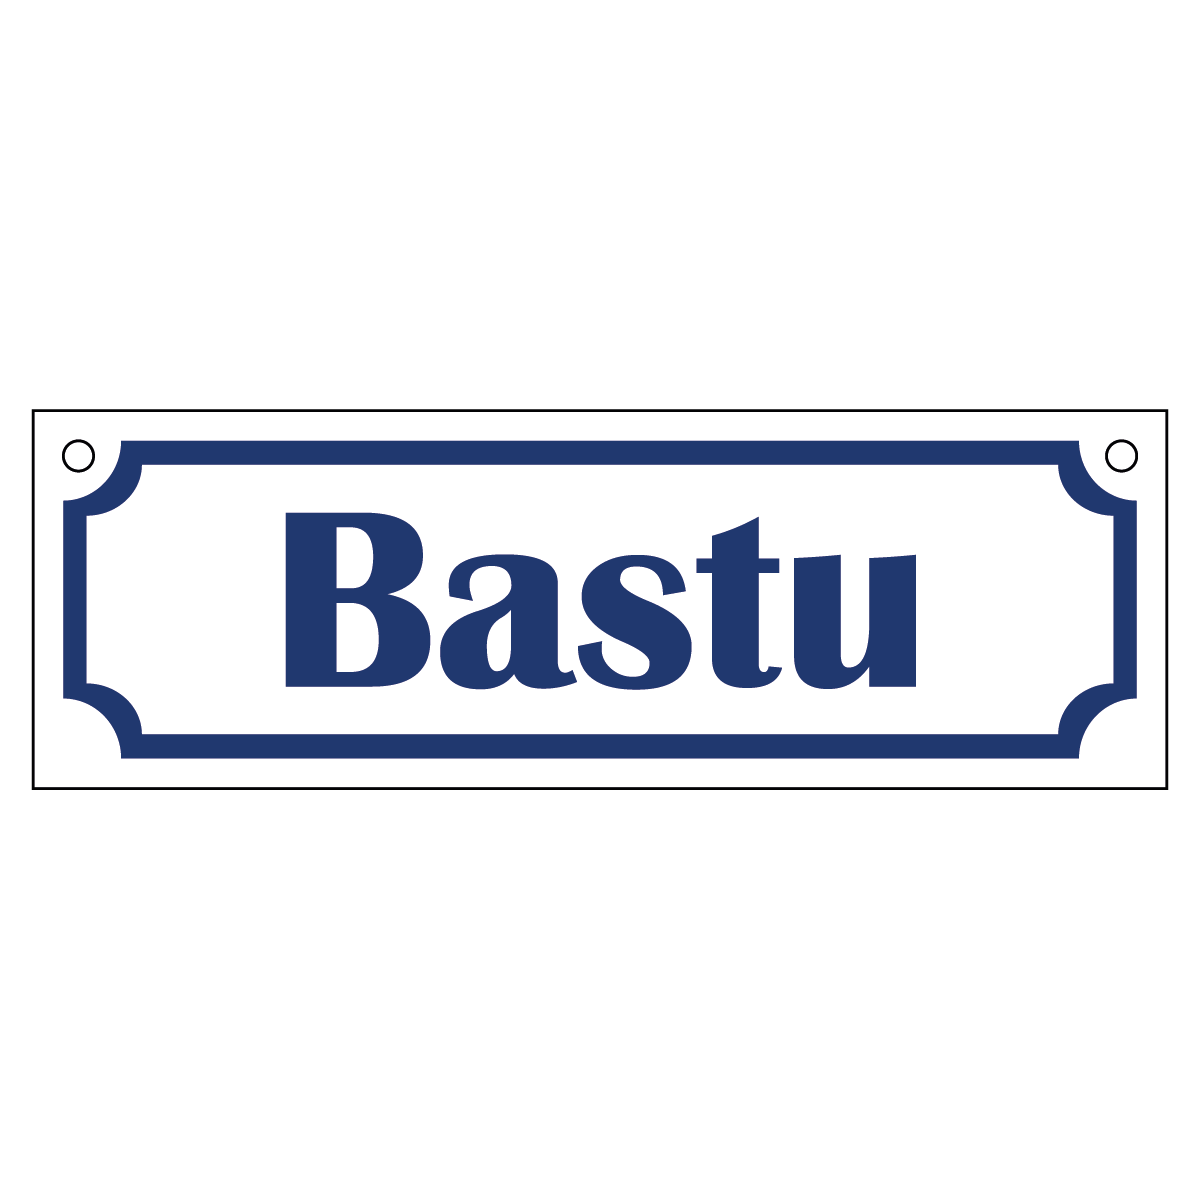 Bastu - Skylt - 150x50mm - Vit - Blå